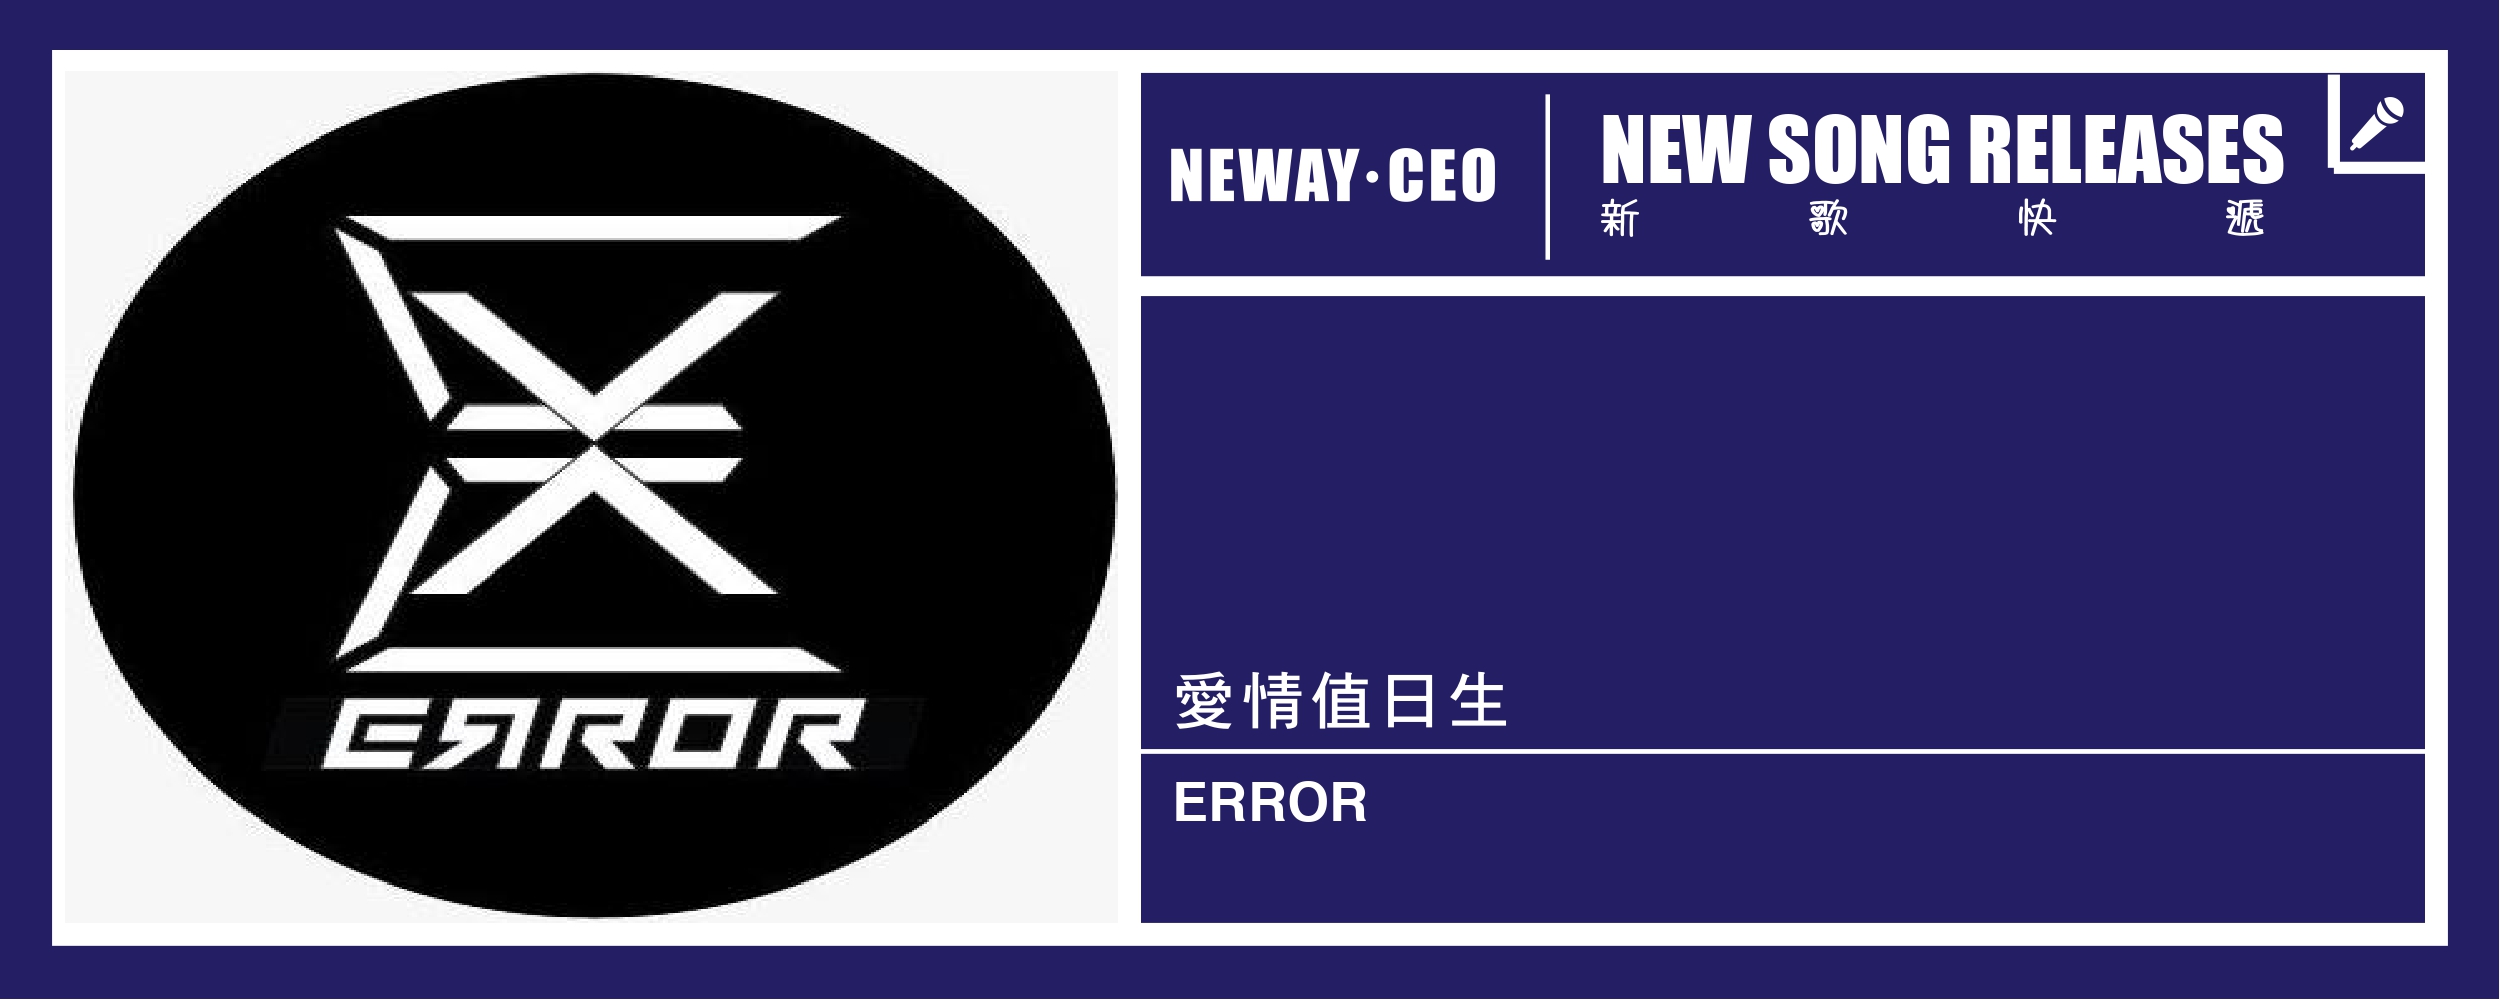 Neway New Release - ERROR